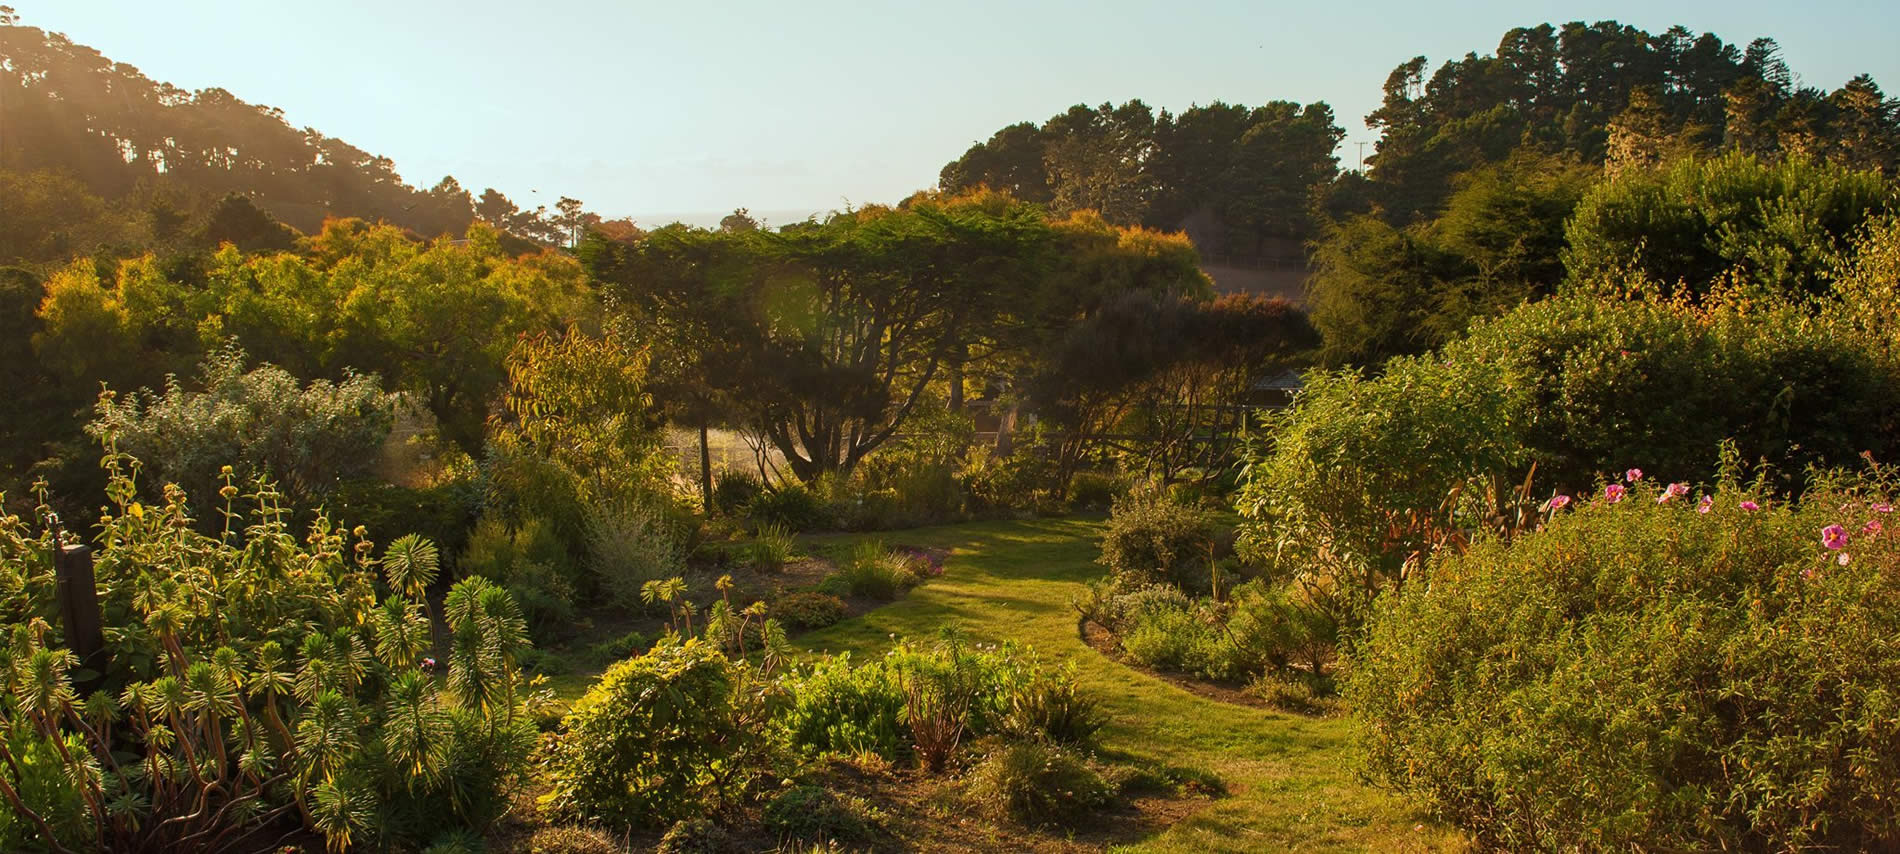 stanford inn mendocino lush gardens for vegan retreat